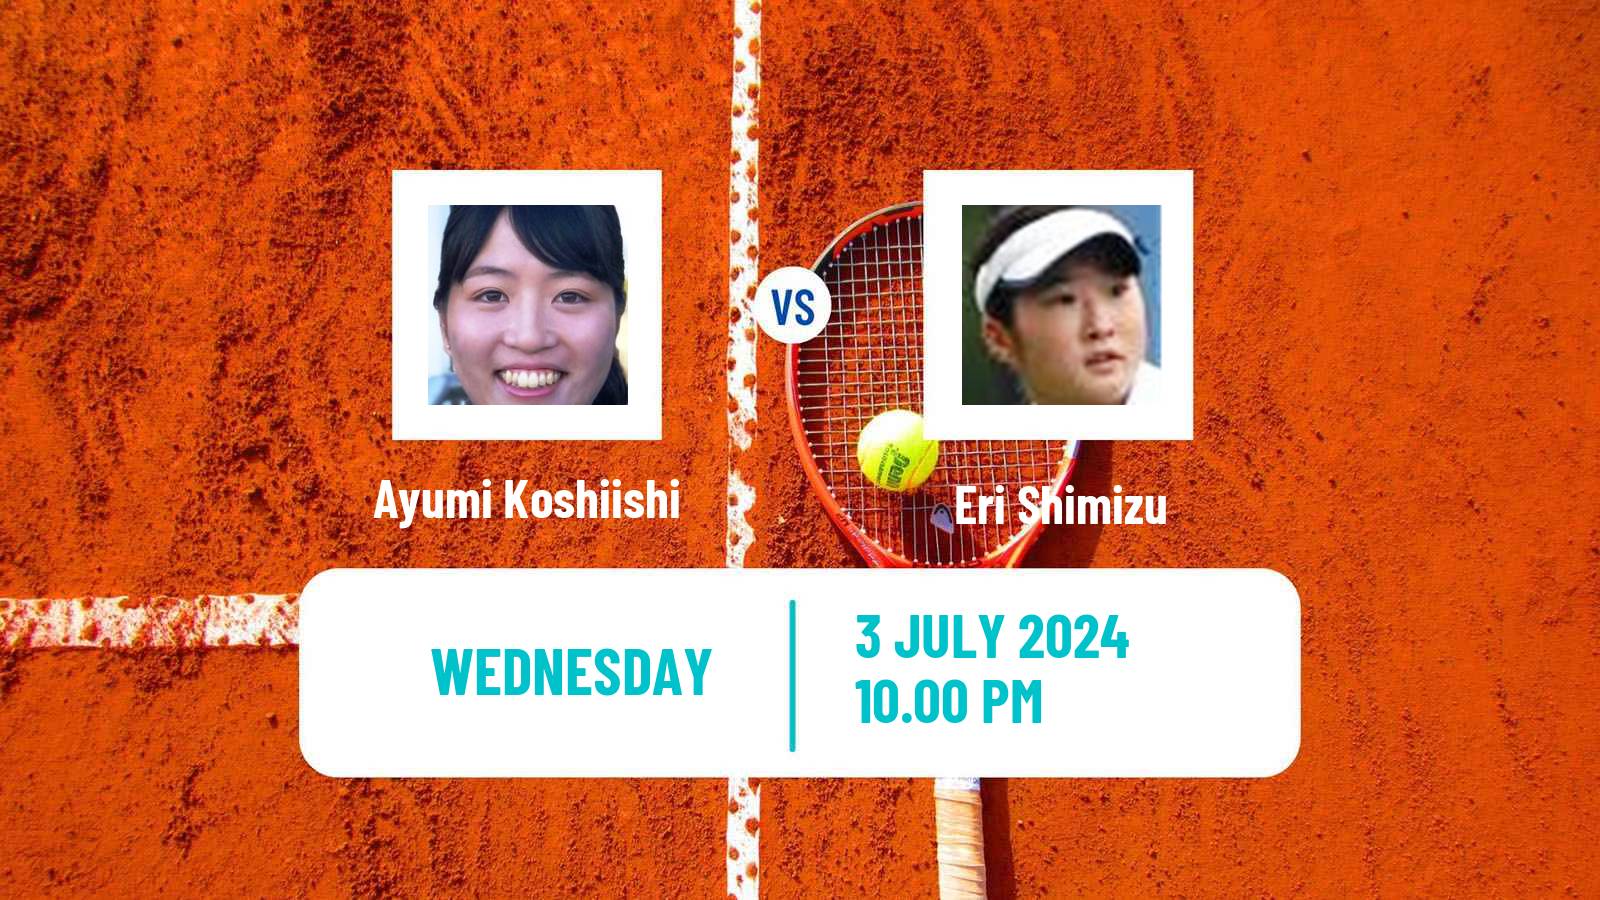 Tennis ITF W35 Nakhon Si Thammarat 2 Women Ayumi Koshiishi - Eri Shimizu